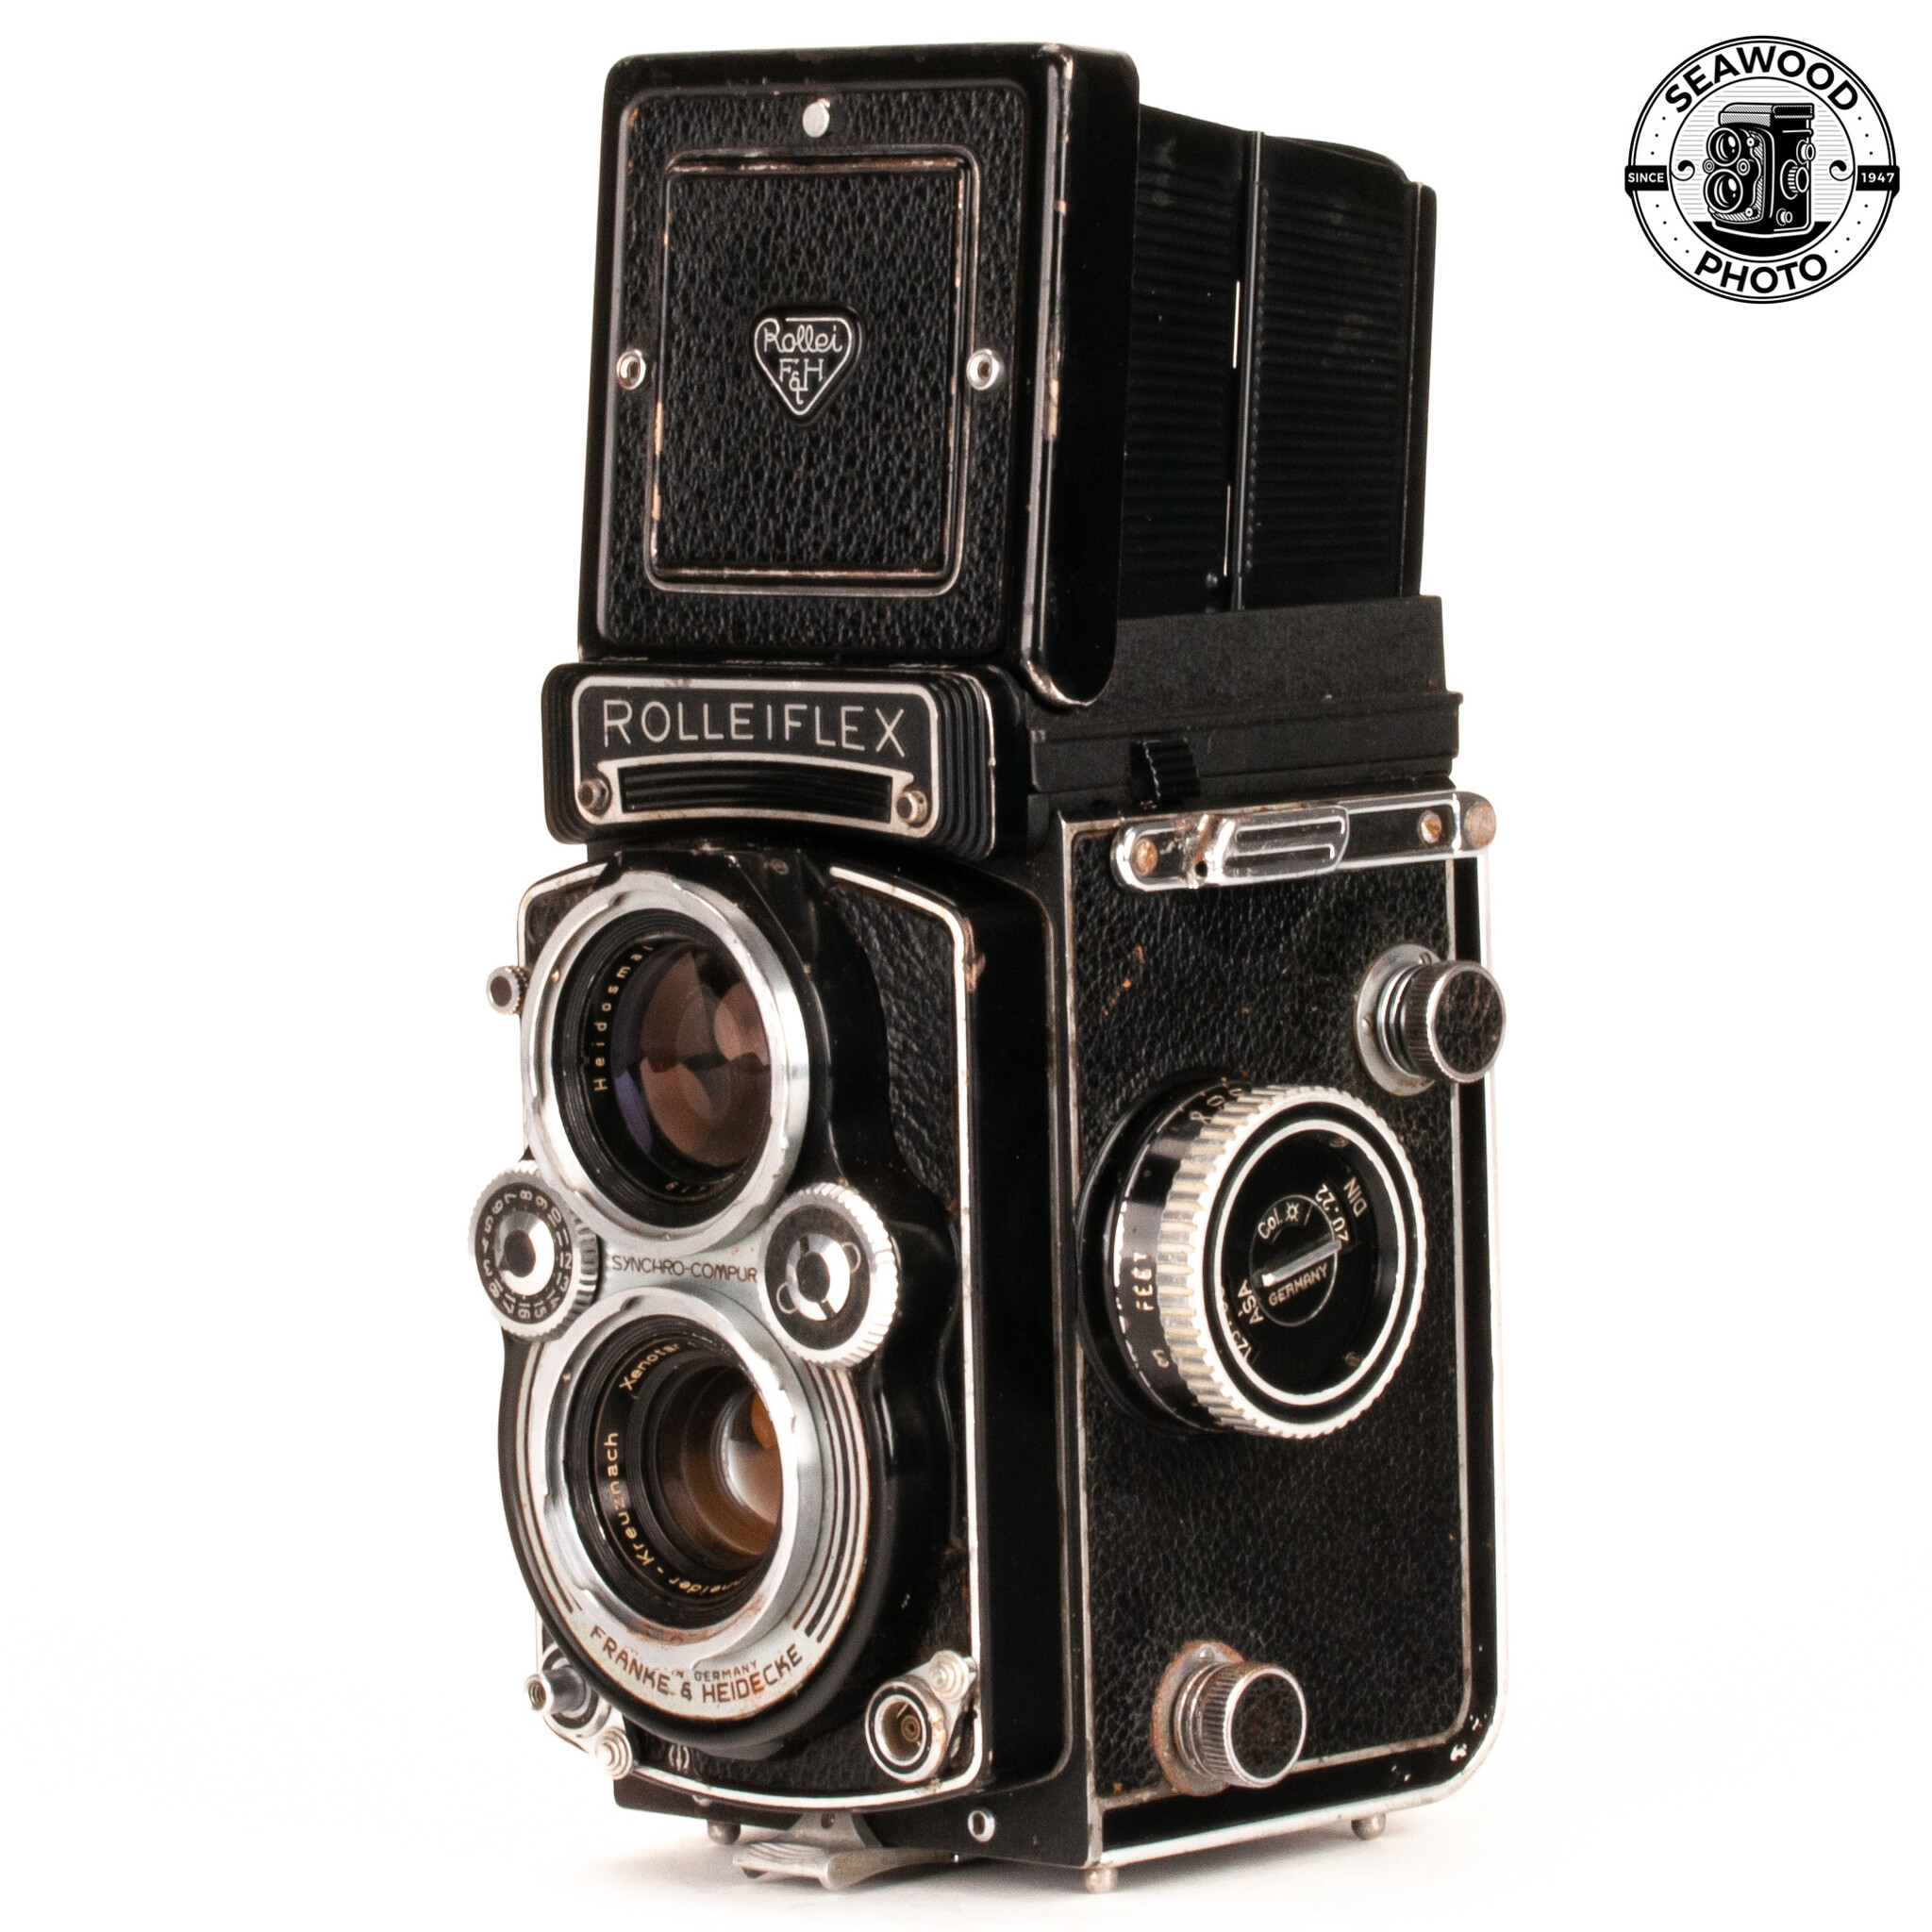 ローライフレックスT tessar 75mm f3.5 - フィルムカメラ